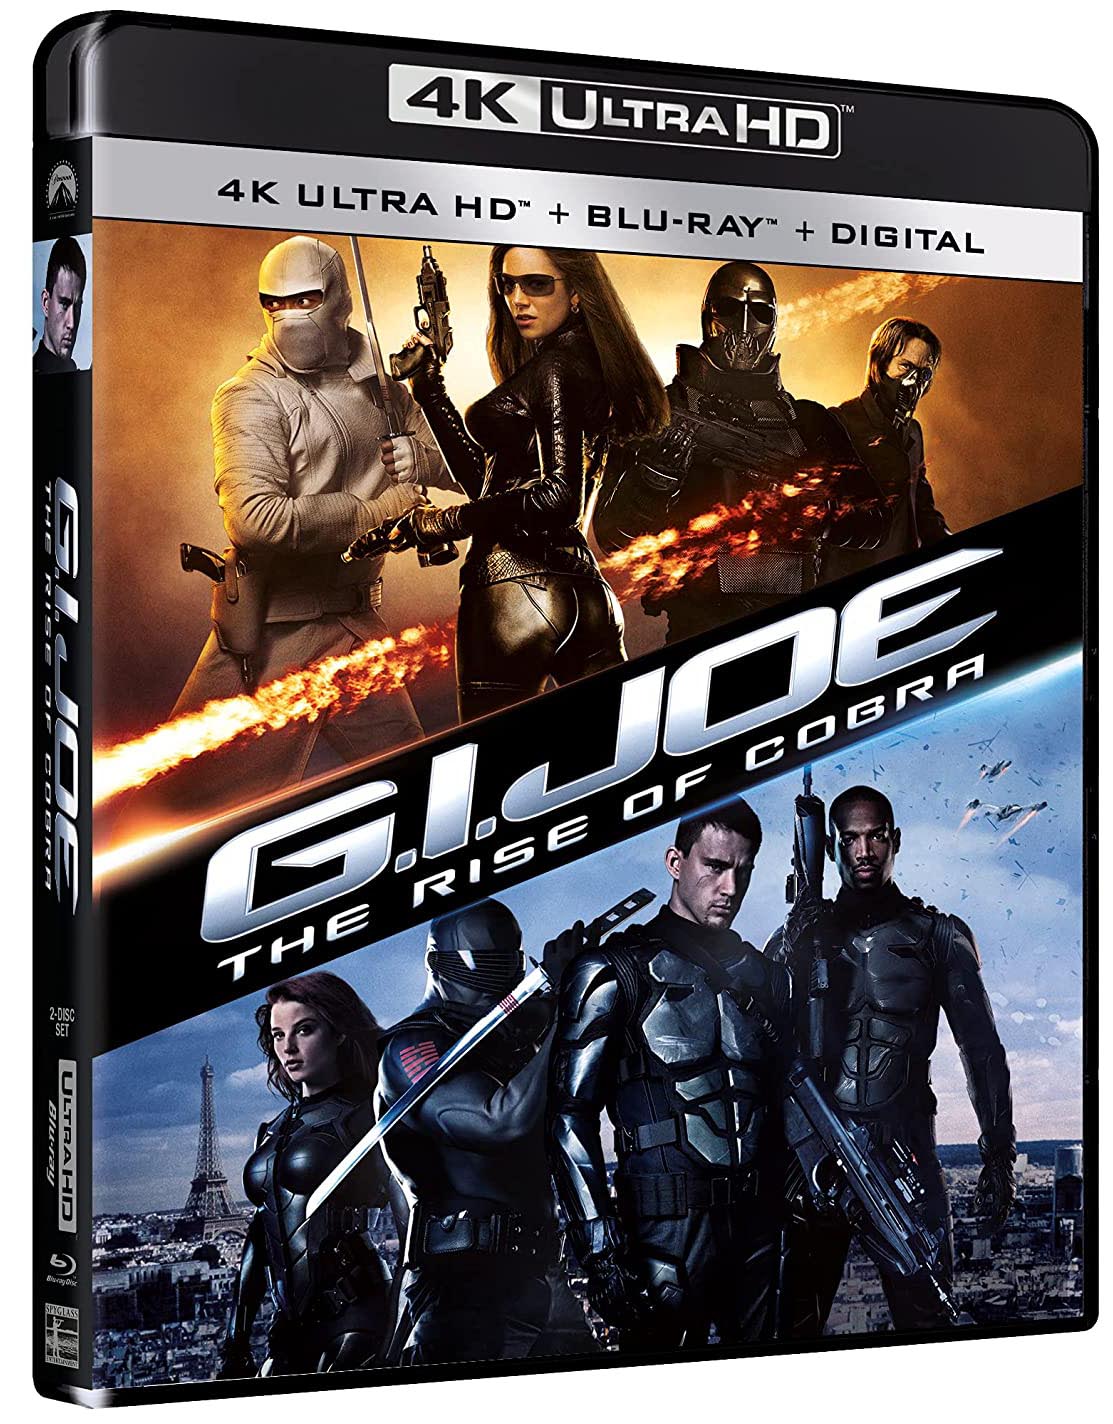 G.I Joe Rise of the Cobra 4k Blu-ray